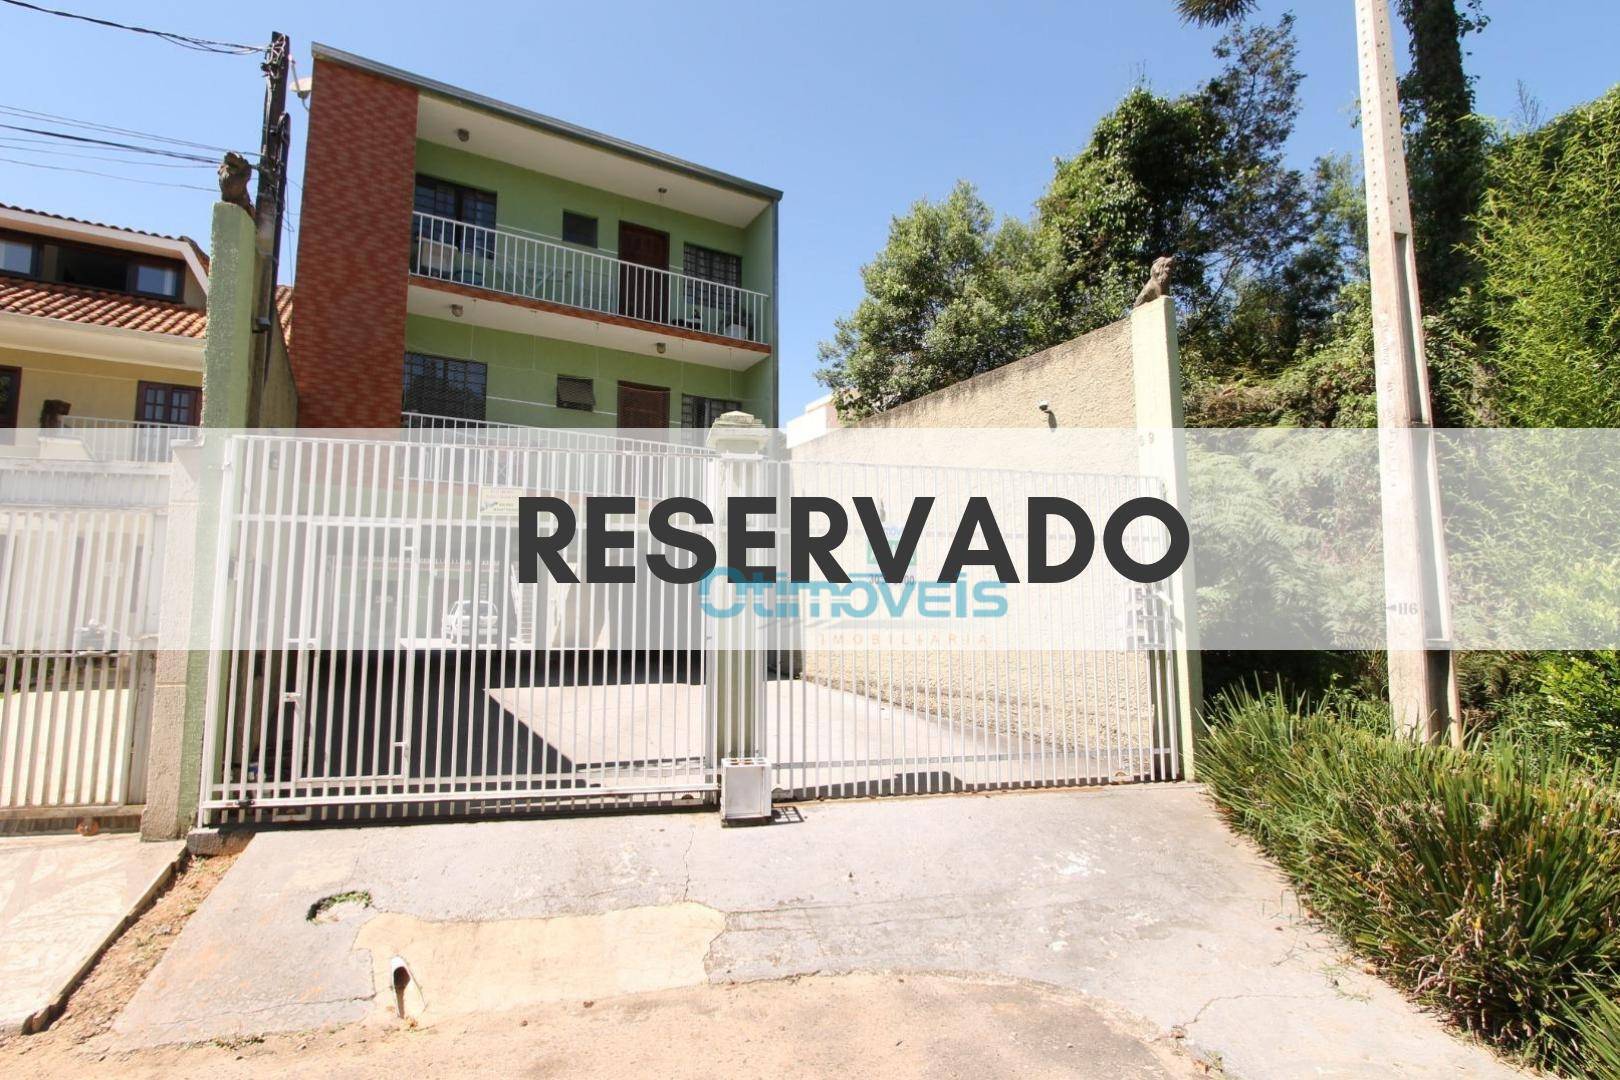 Apartamento com 2 dormitórios para alugar, 60 m² por R$ 900,00/mês - Loteamento Marinoni - Almirante Tamandaré/PR